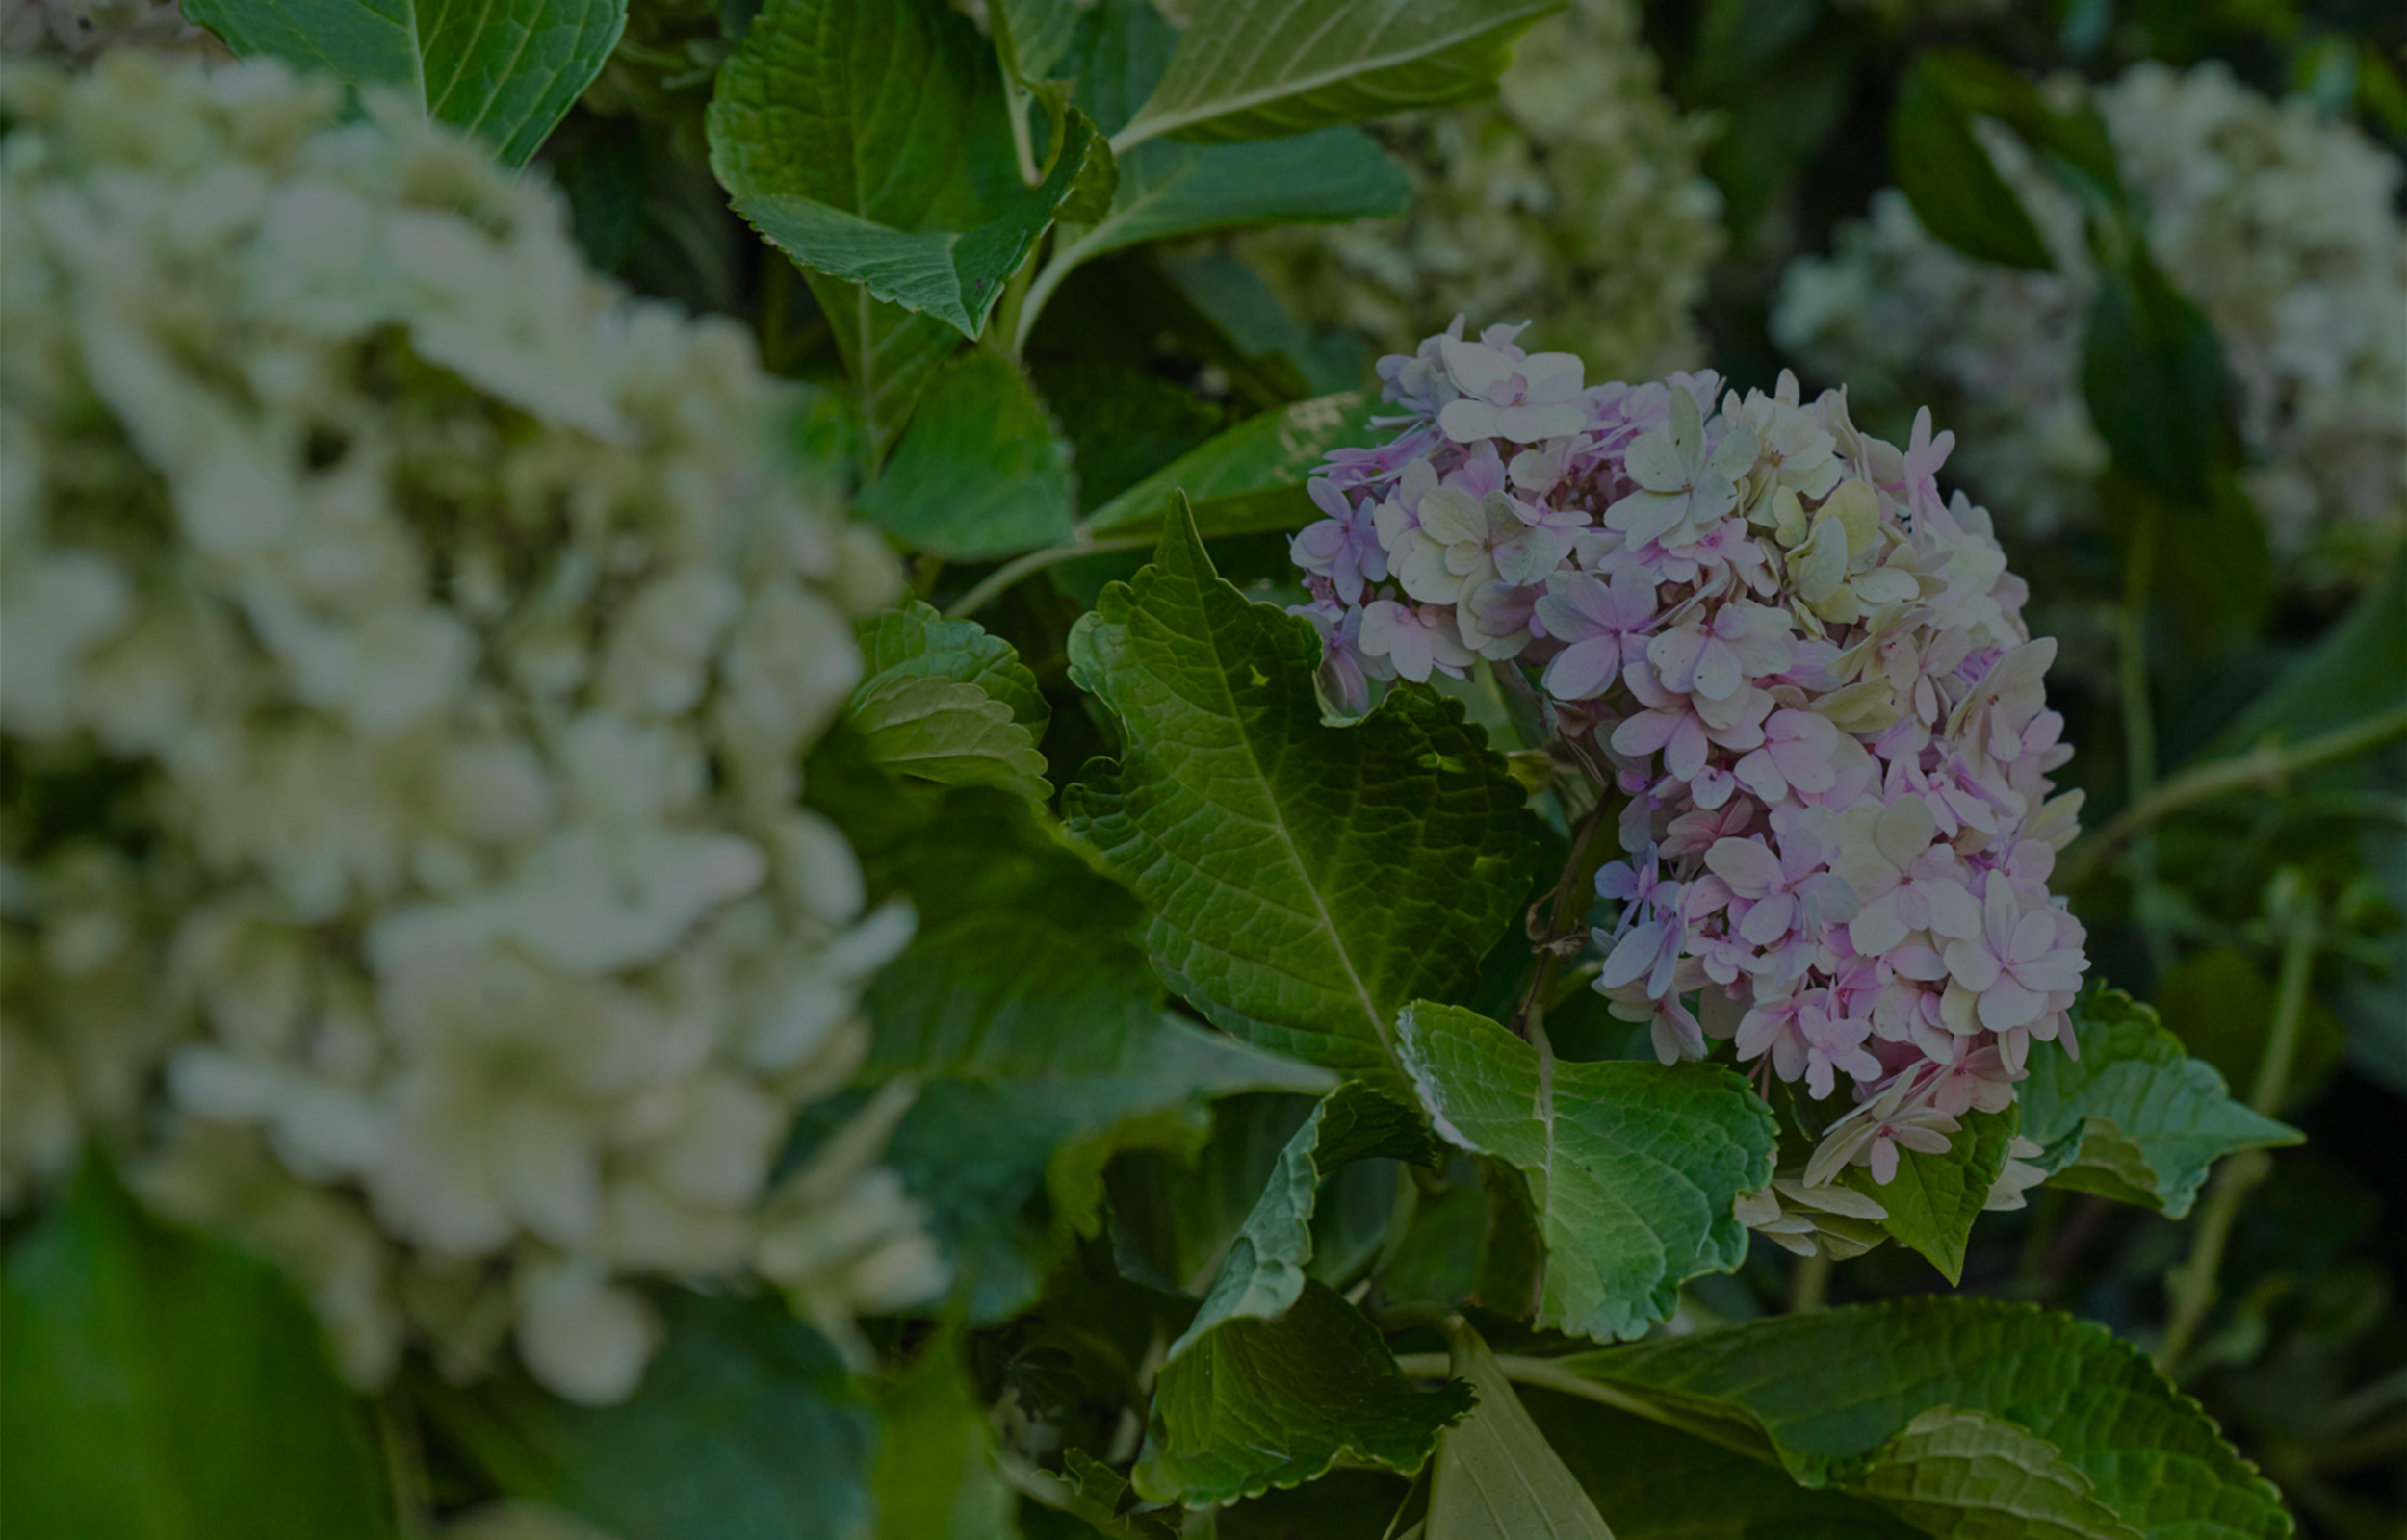 Un arbuste avec des hortensias blancs et violet clair